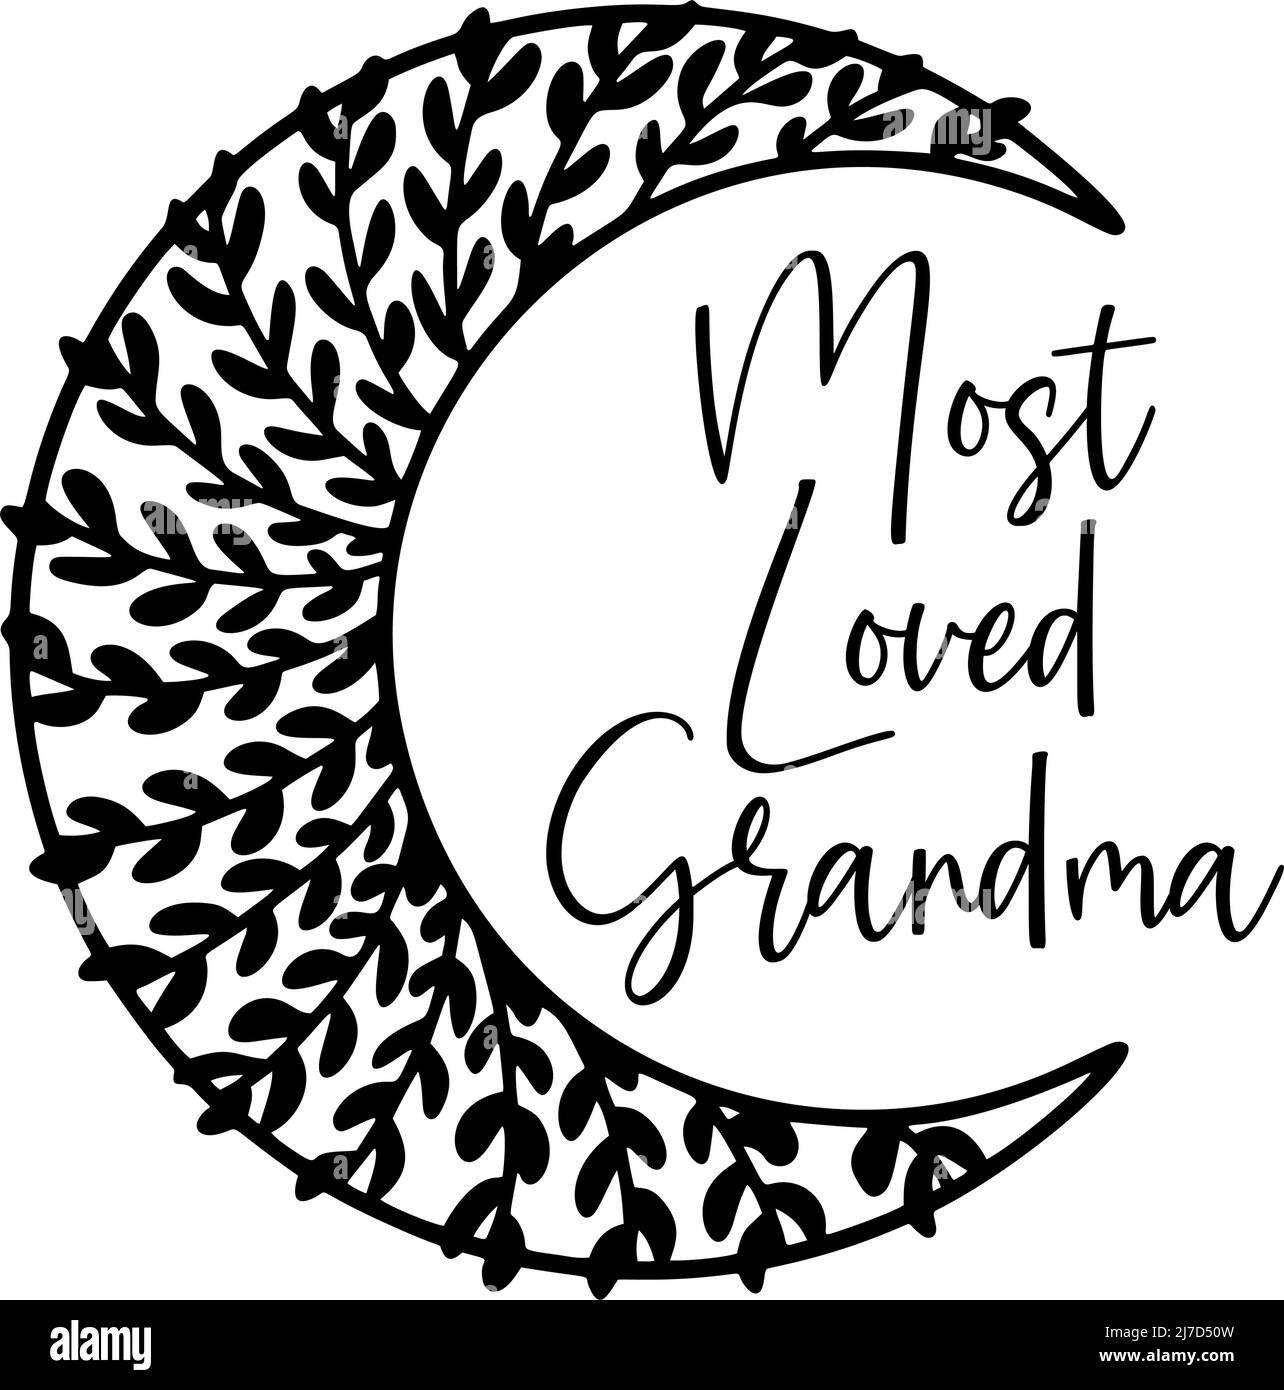 Am meisten geliebt Oma Zitat Design, Boho floralen Mond Design. Postkarten-Design zum Muttertag. Geschenk für Großmutter. Stock Vektor